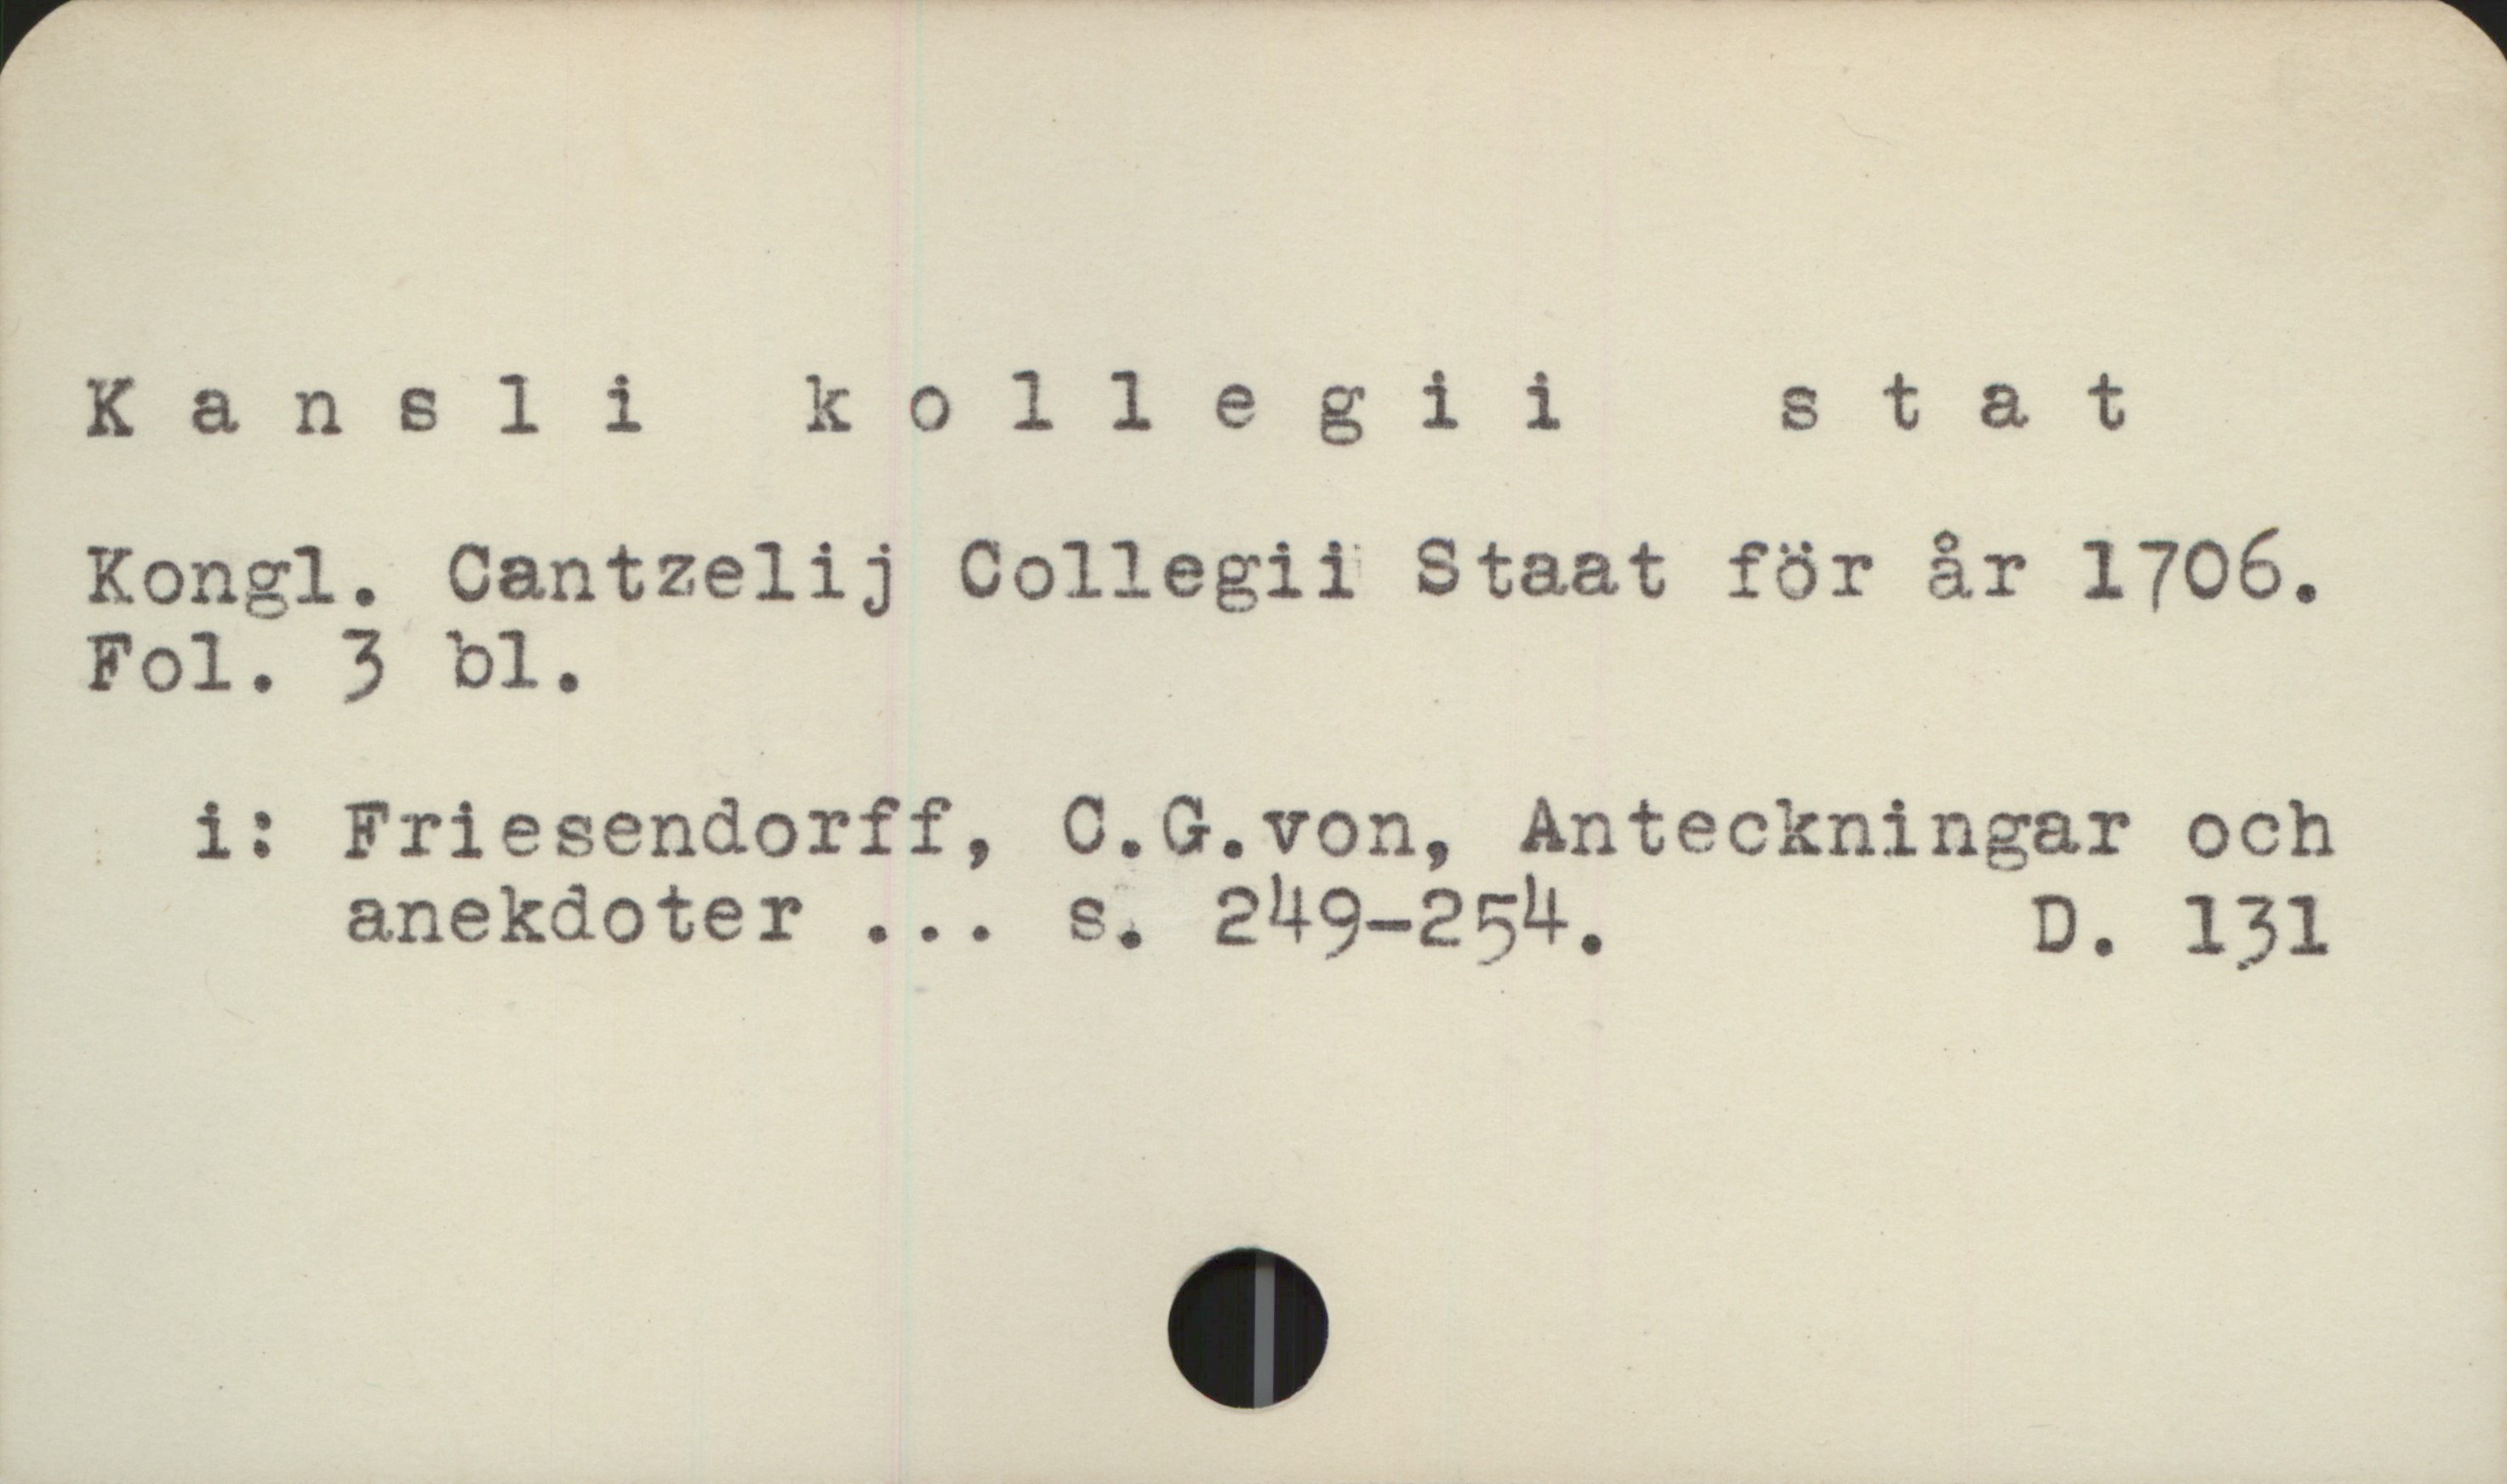  K & n 8 1 ikollegiistat

Kongl. Cantzelij Collegii Staat för är 1706.

Fol. 3 bl.

- 1: Friesendorff, 0.QG.von, Anteckningar och
anekdoter ... s. 249-254, D. 131

